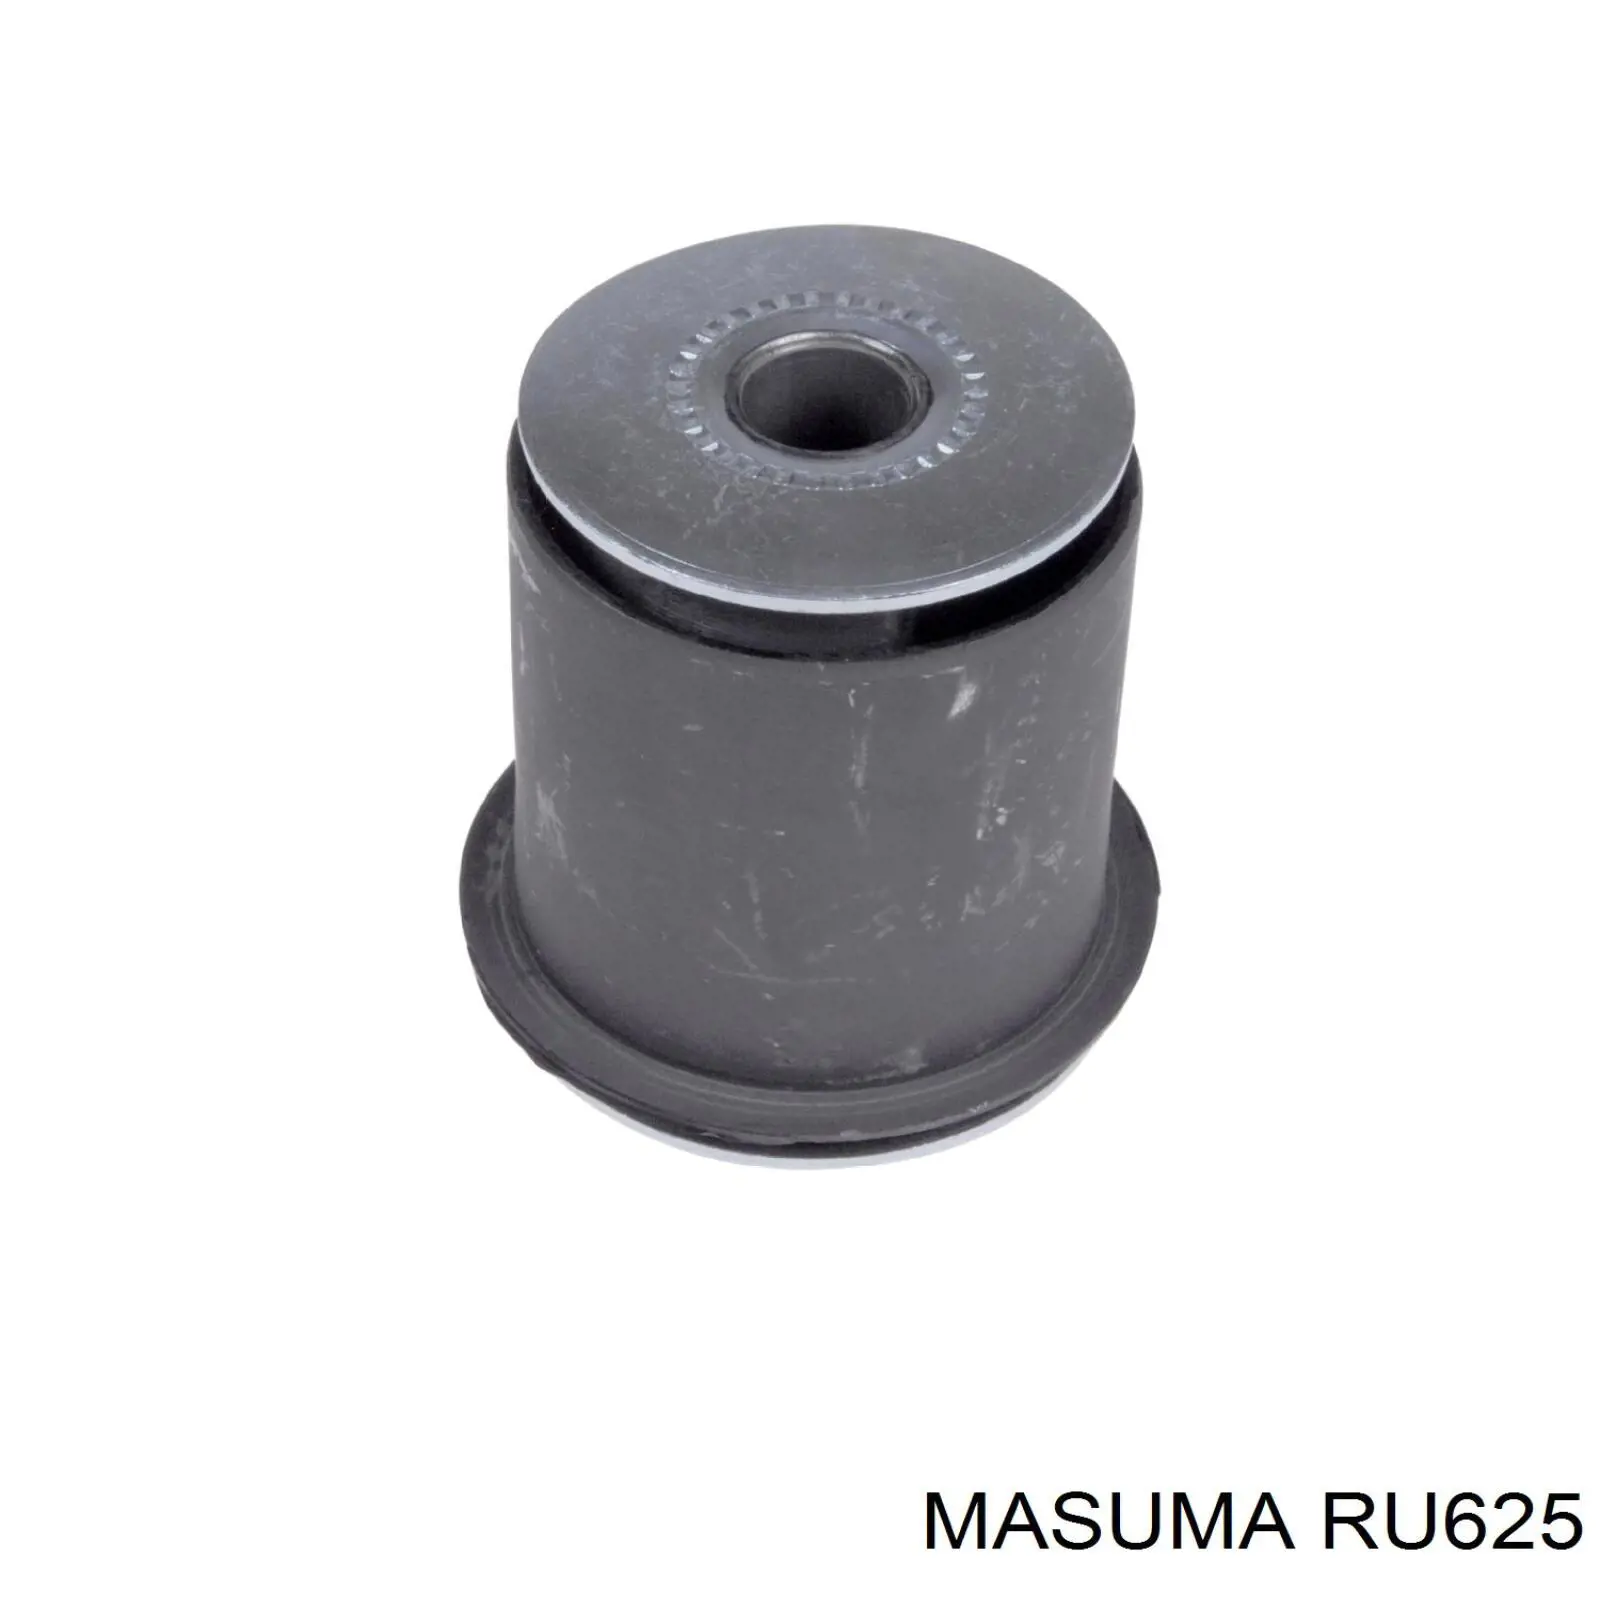 RU625 Masuma silentblock de suspensión delantero inferior